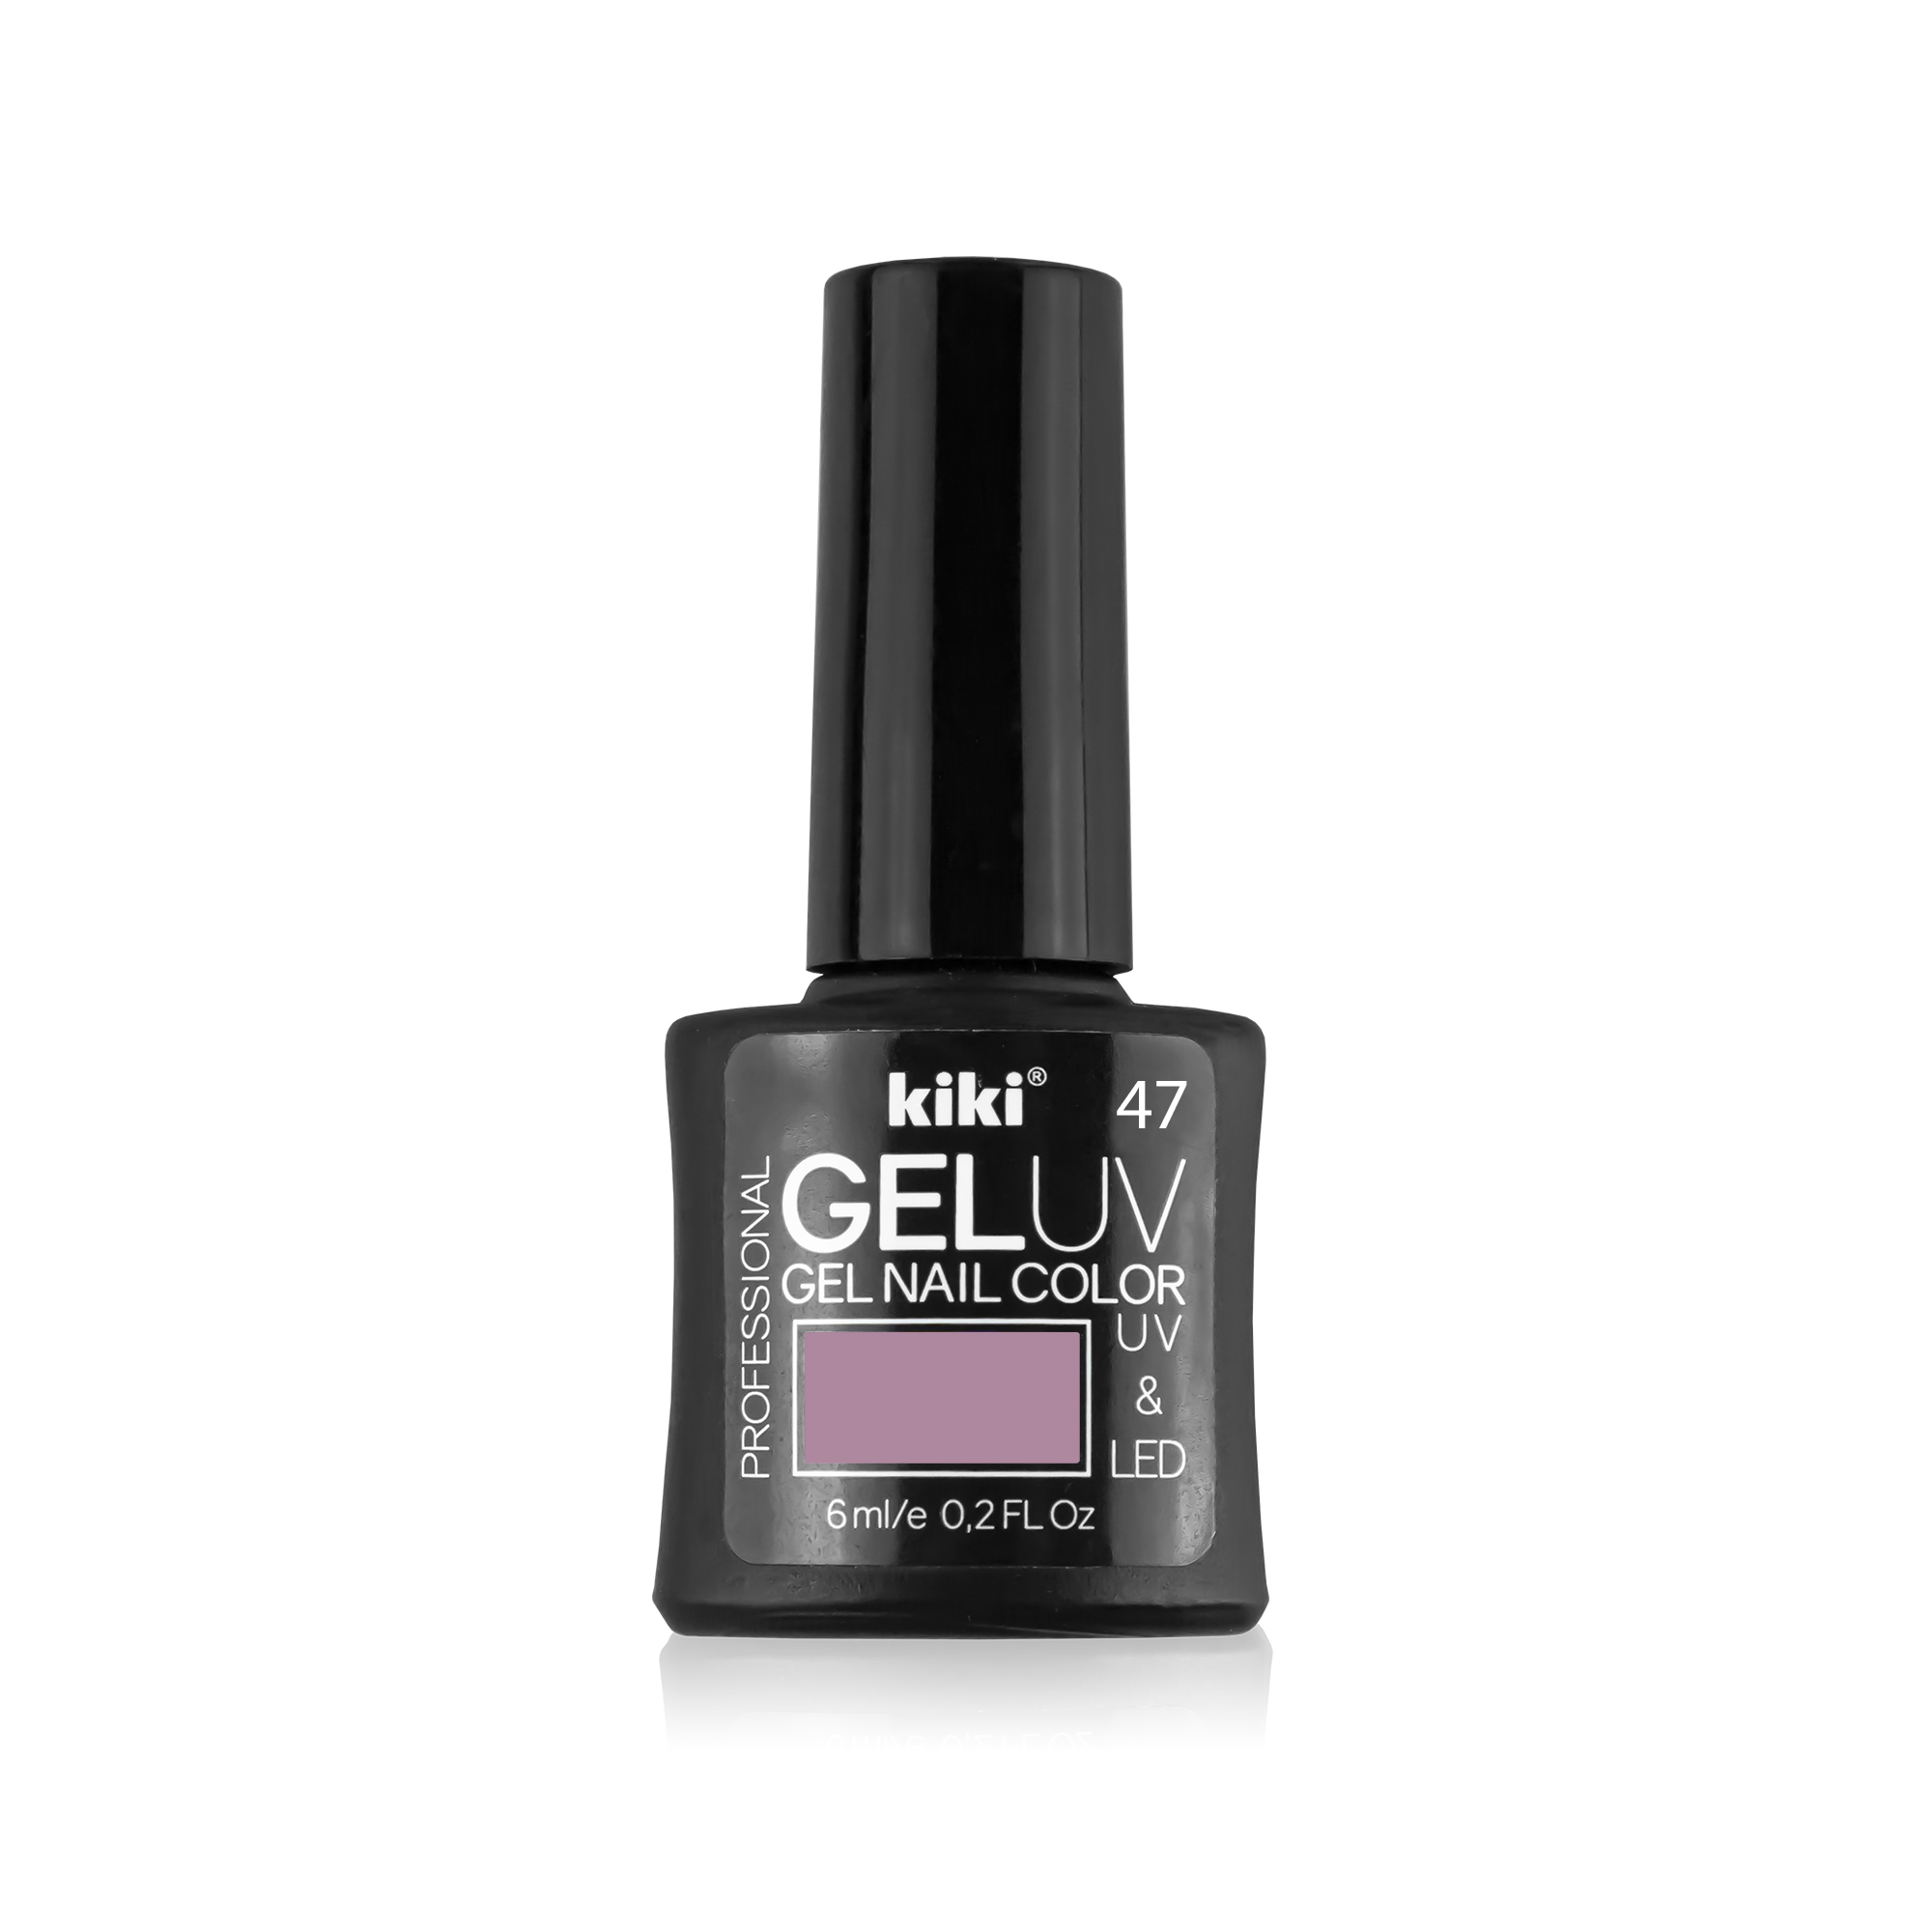 Гель-лак для ногтей Kiki Gel Uv&Led 47 какао с молоком лак для ногтей с гелевым эффектом kiki gel effect 069 телесно розовый